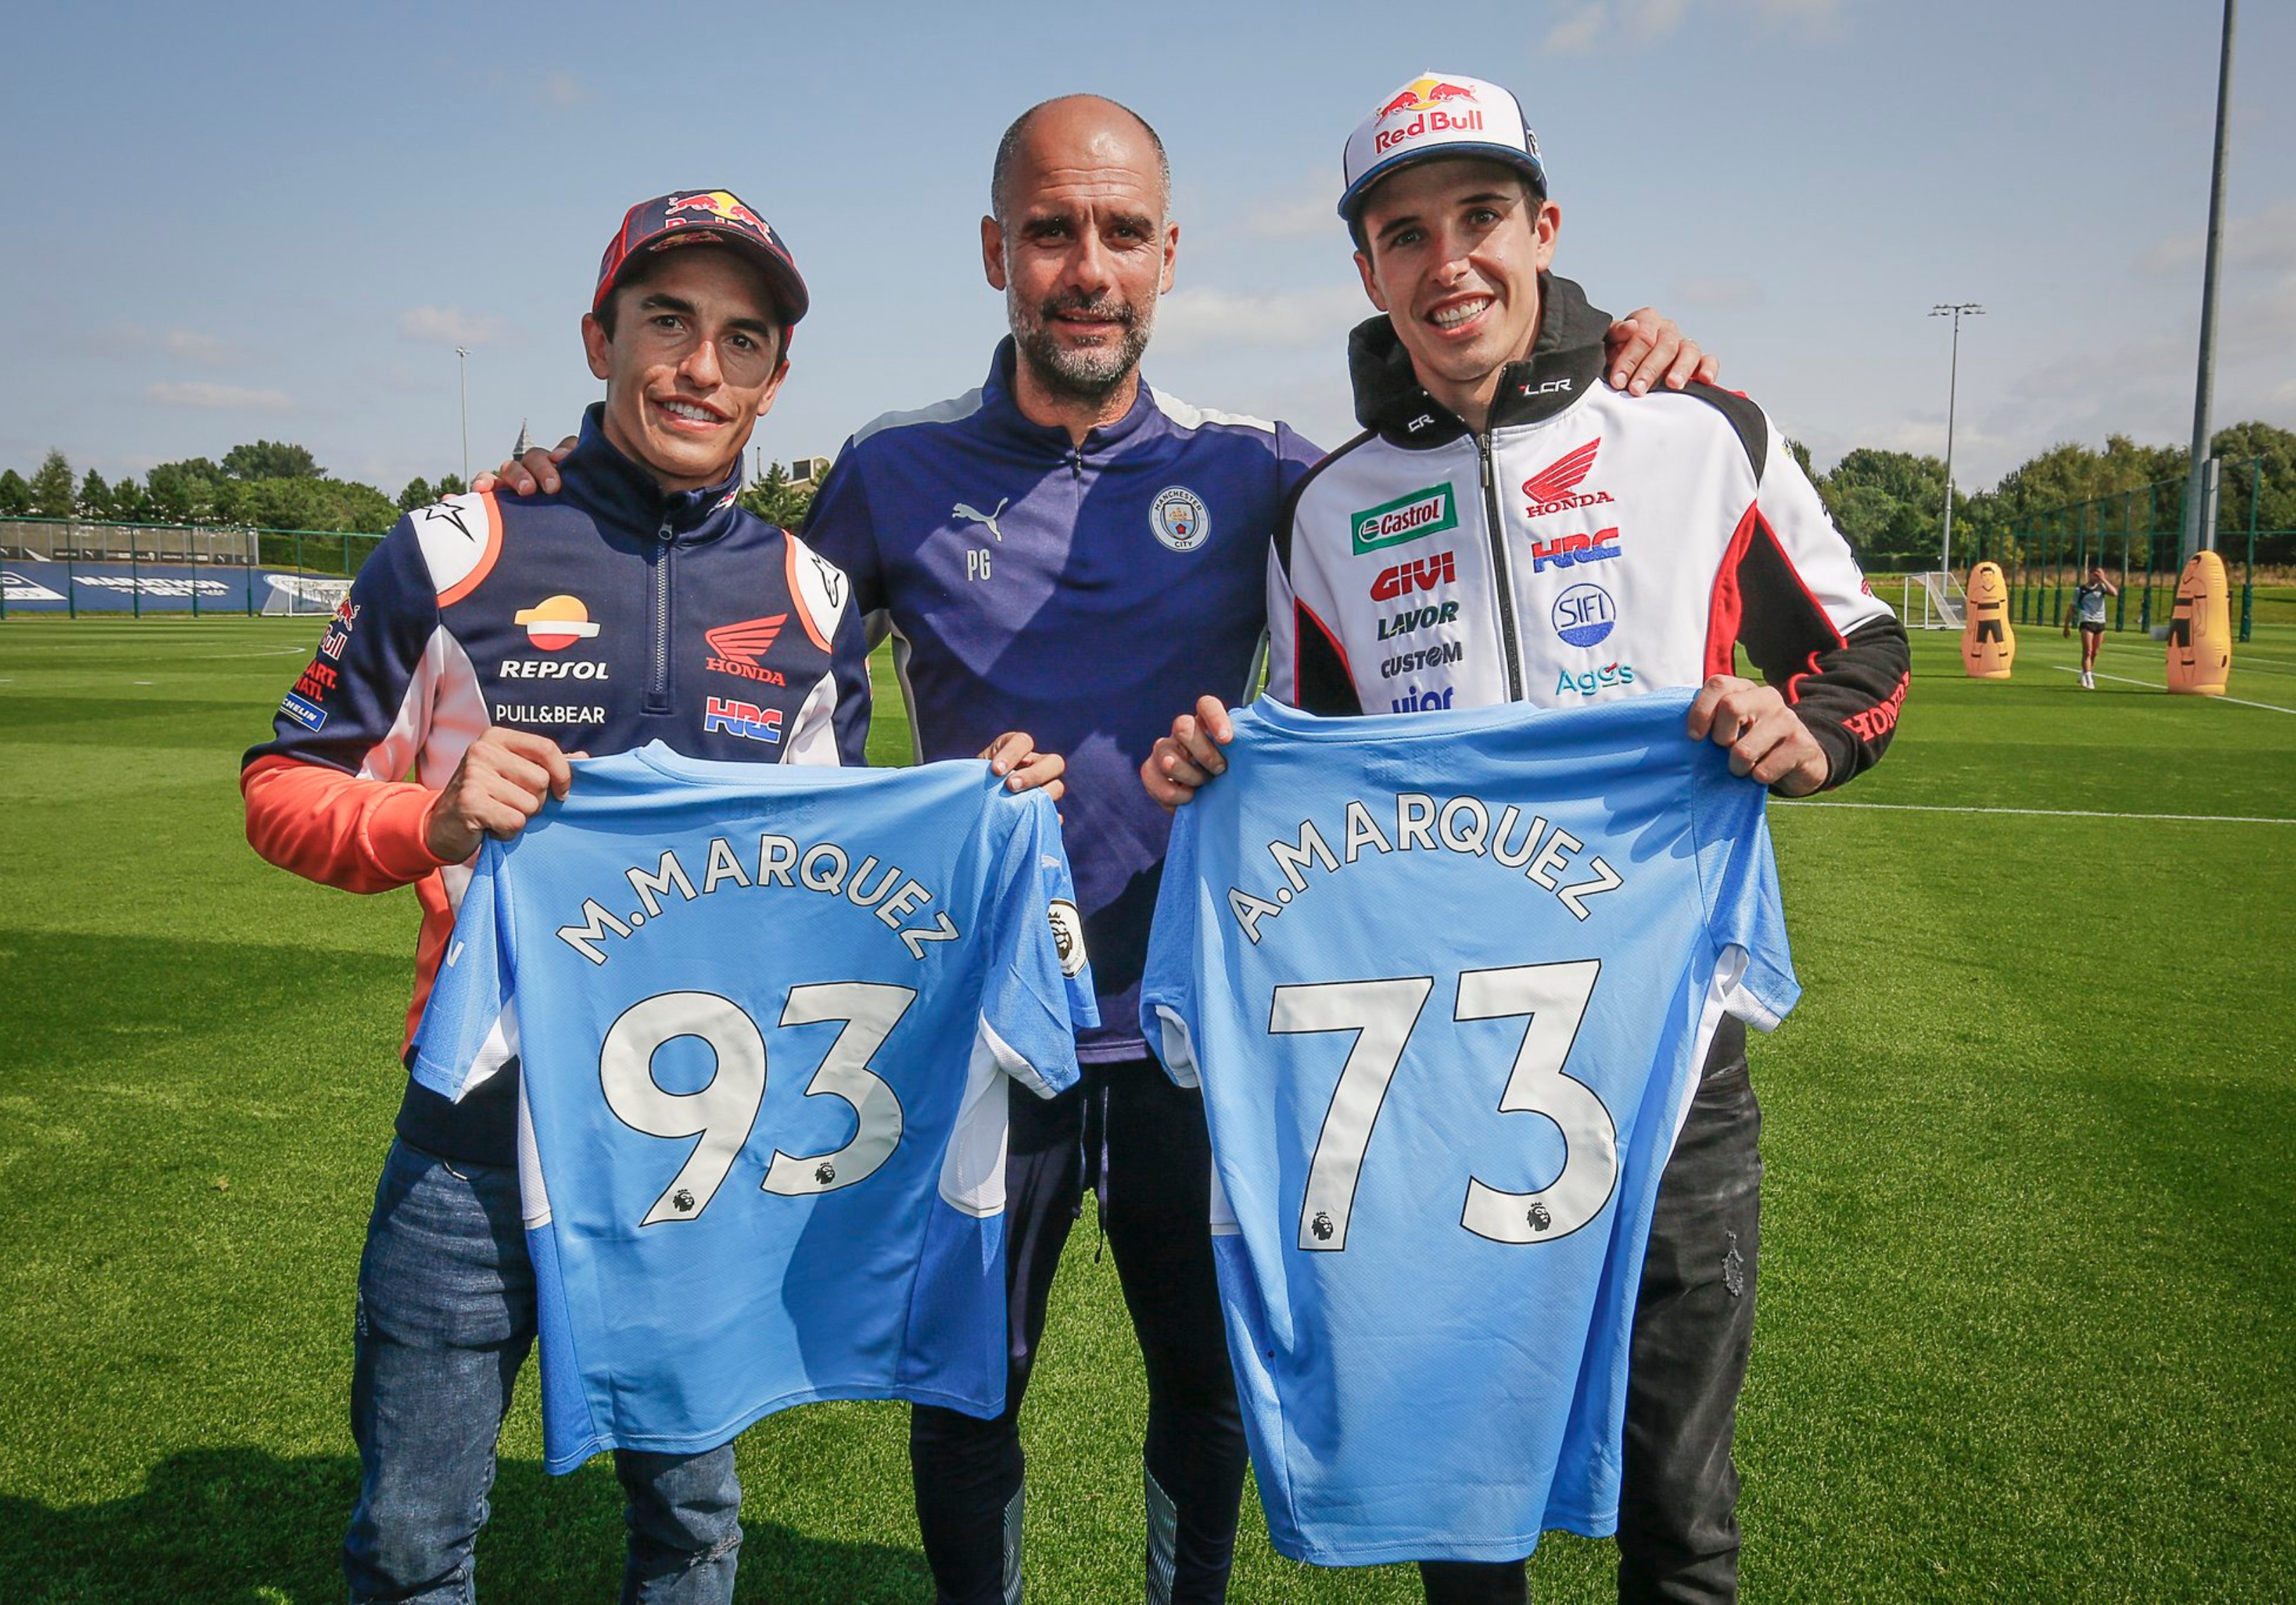 Los hermanos Márquez estuvieron en un entreno del Manchester City y conocieron a jugadores y al entrenador Pep Guardiola. Foto @MotoGP